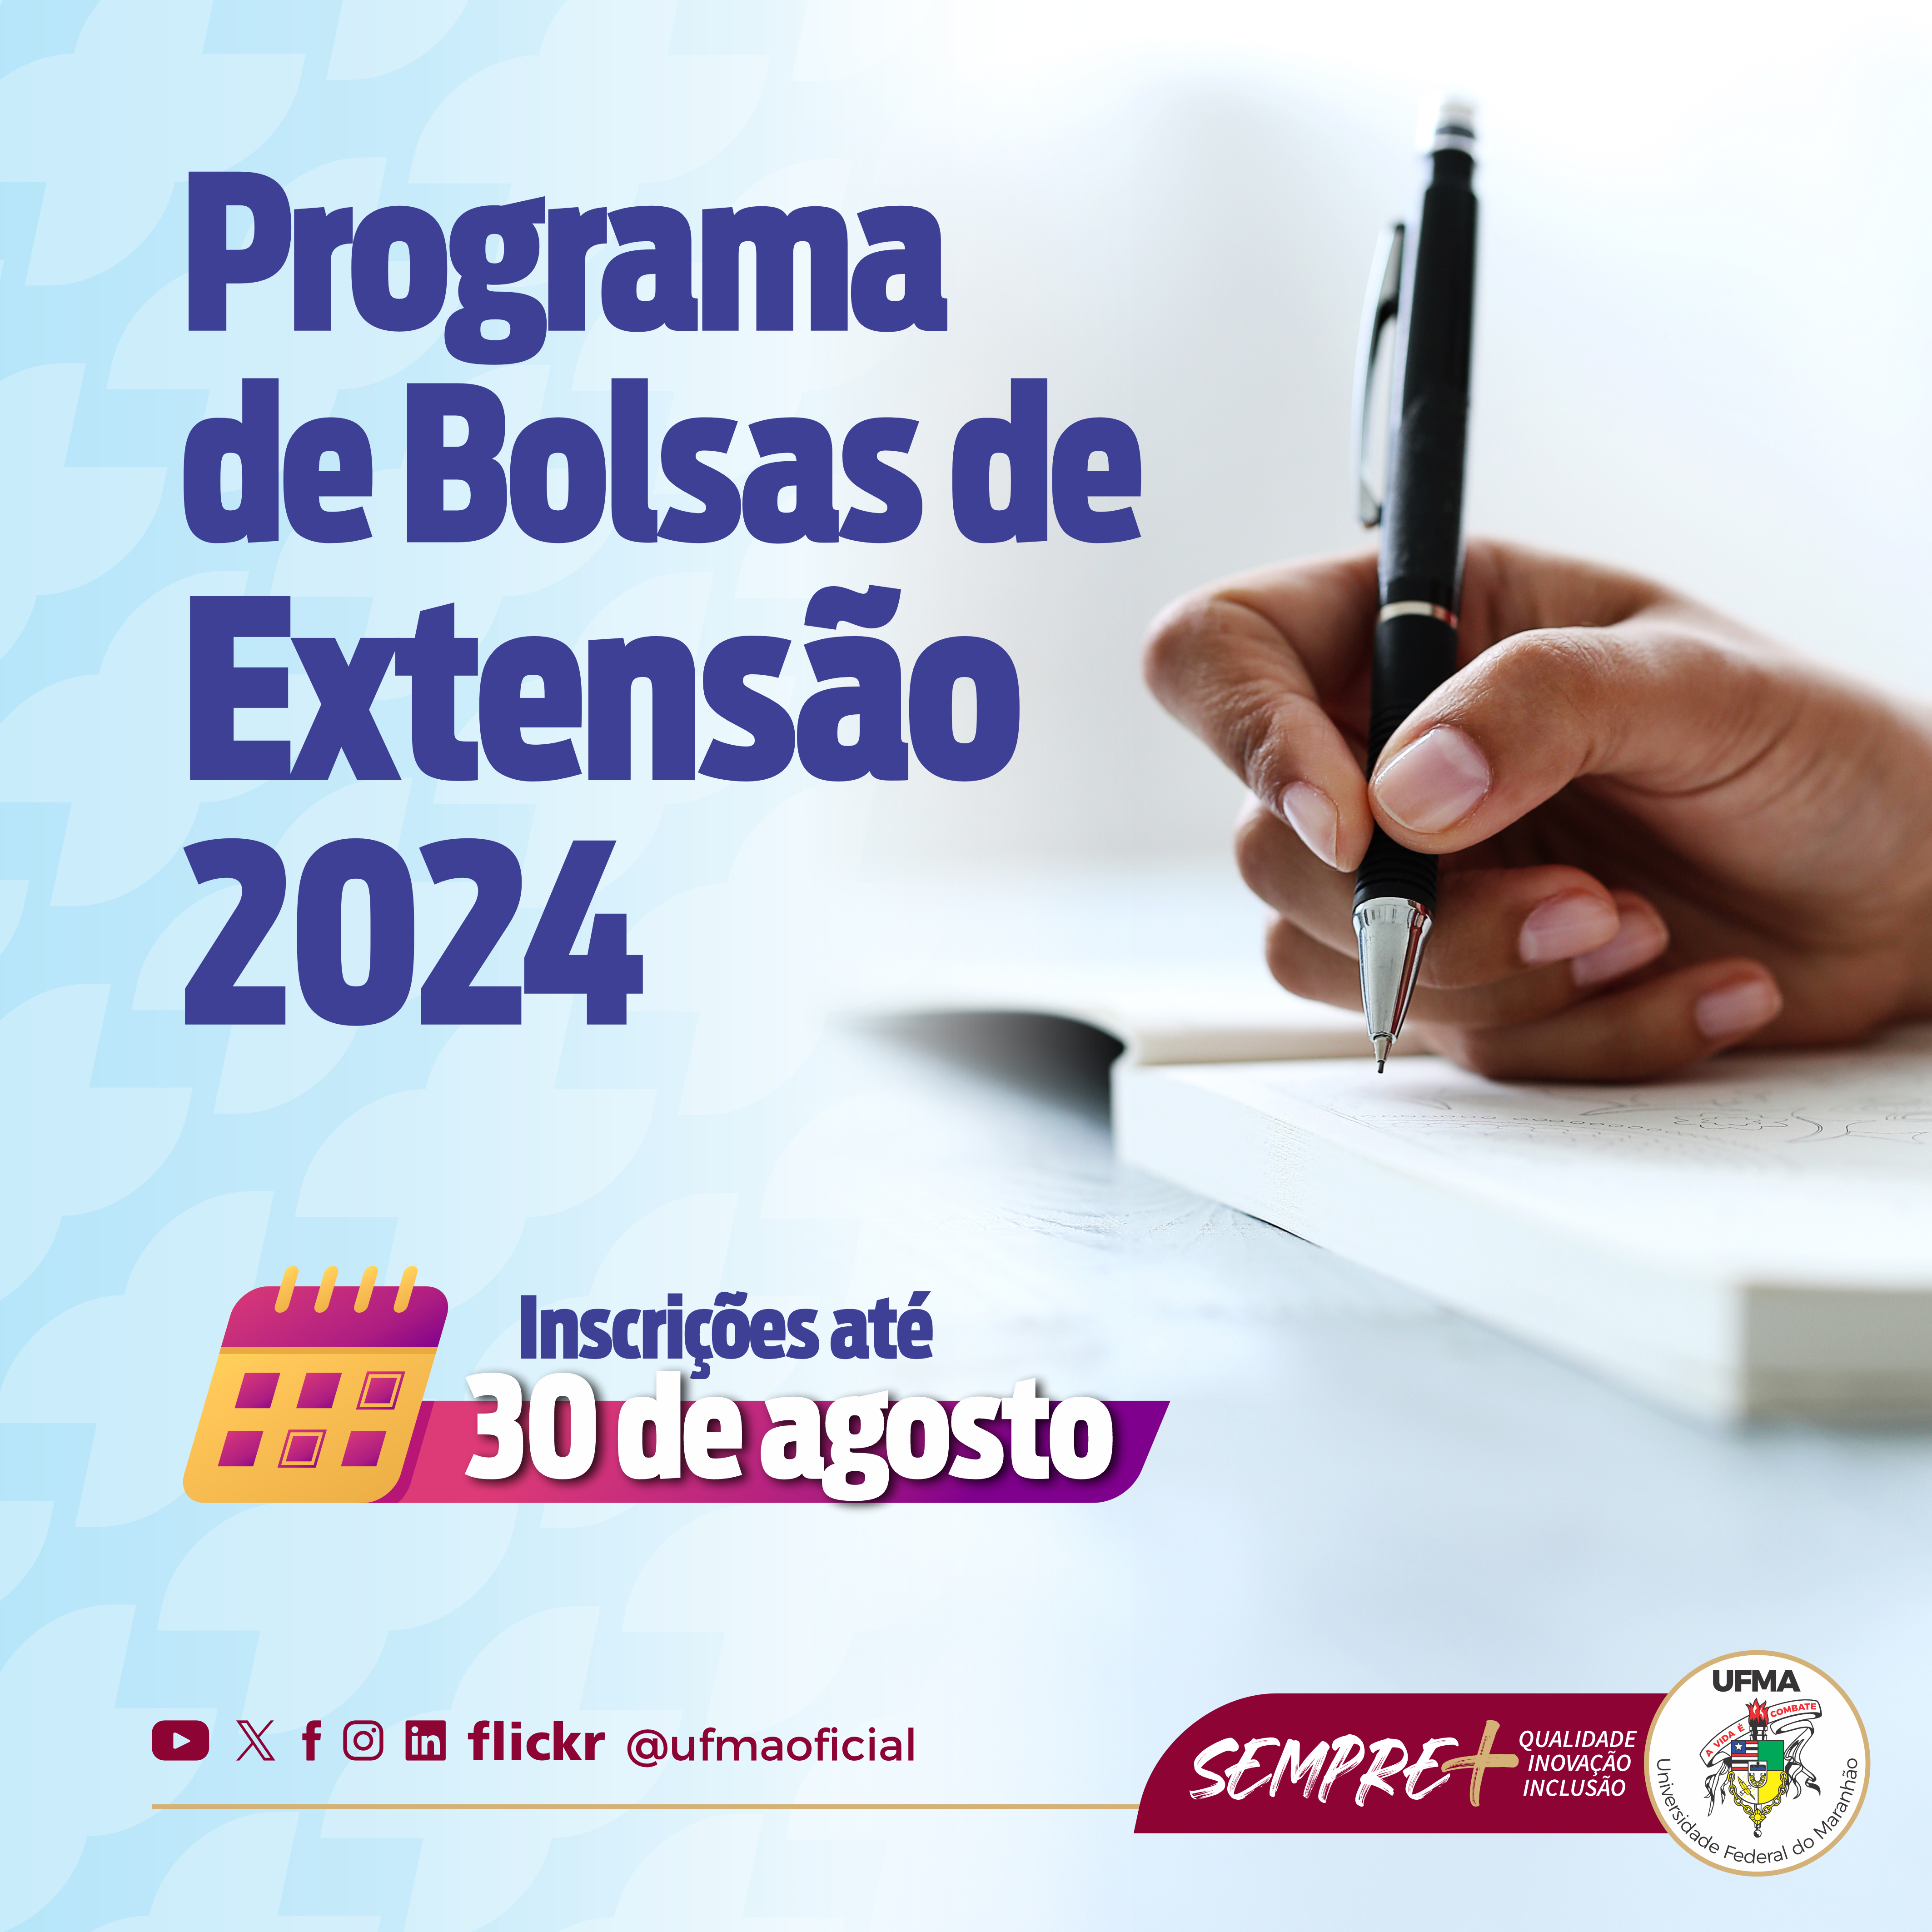 Programa de Bolsas de Extensão 2024: UFMA lança edital para concessão de bolsas